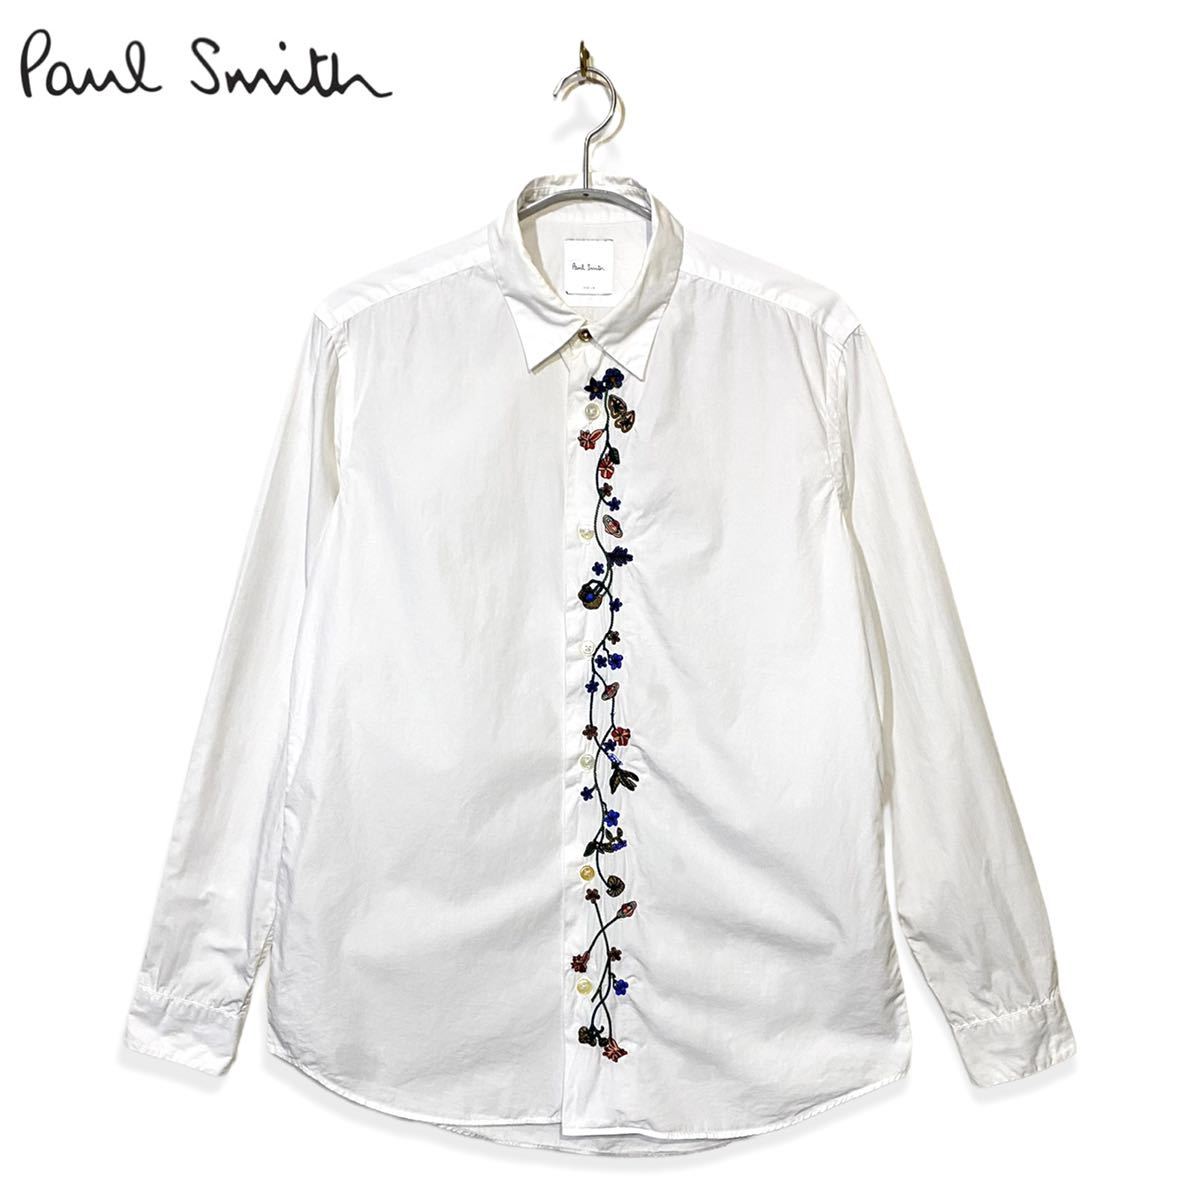 適当な価格適当な価格Paul Smith ポールスミス フラワー刺繍長袖シャツ 